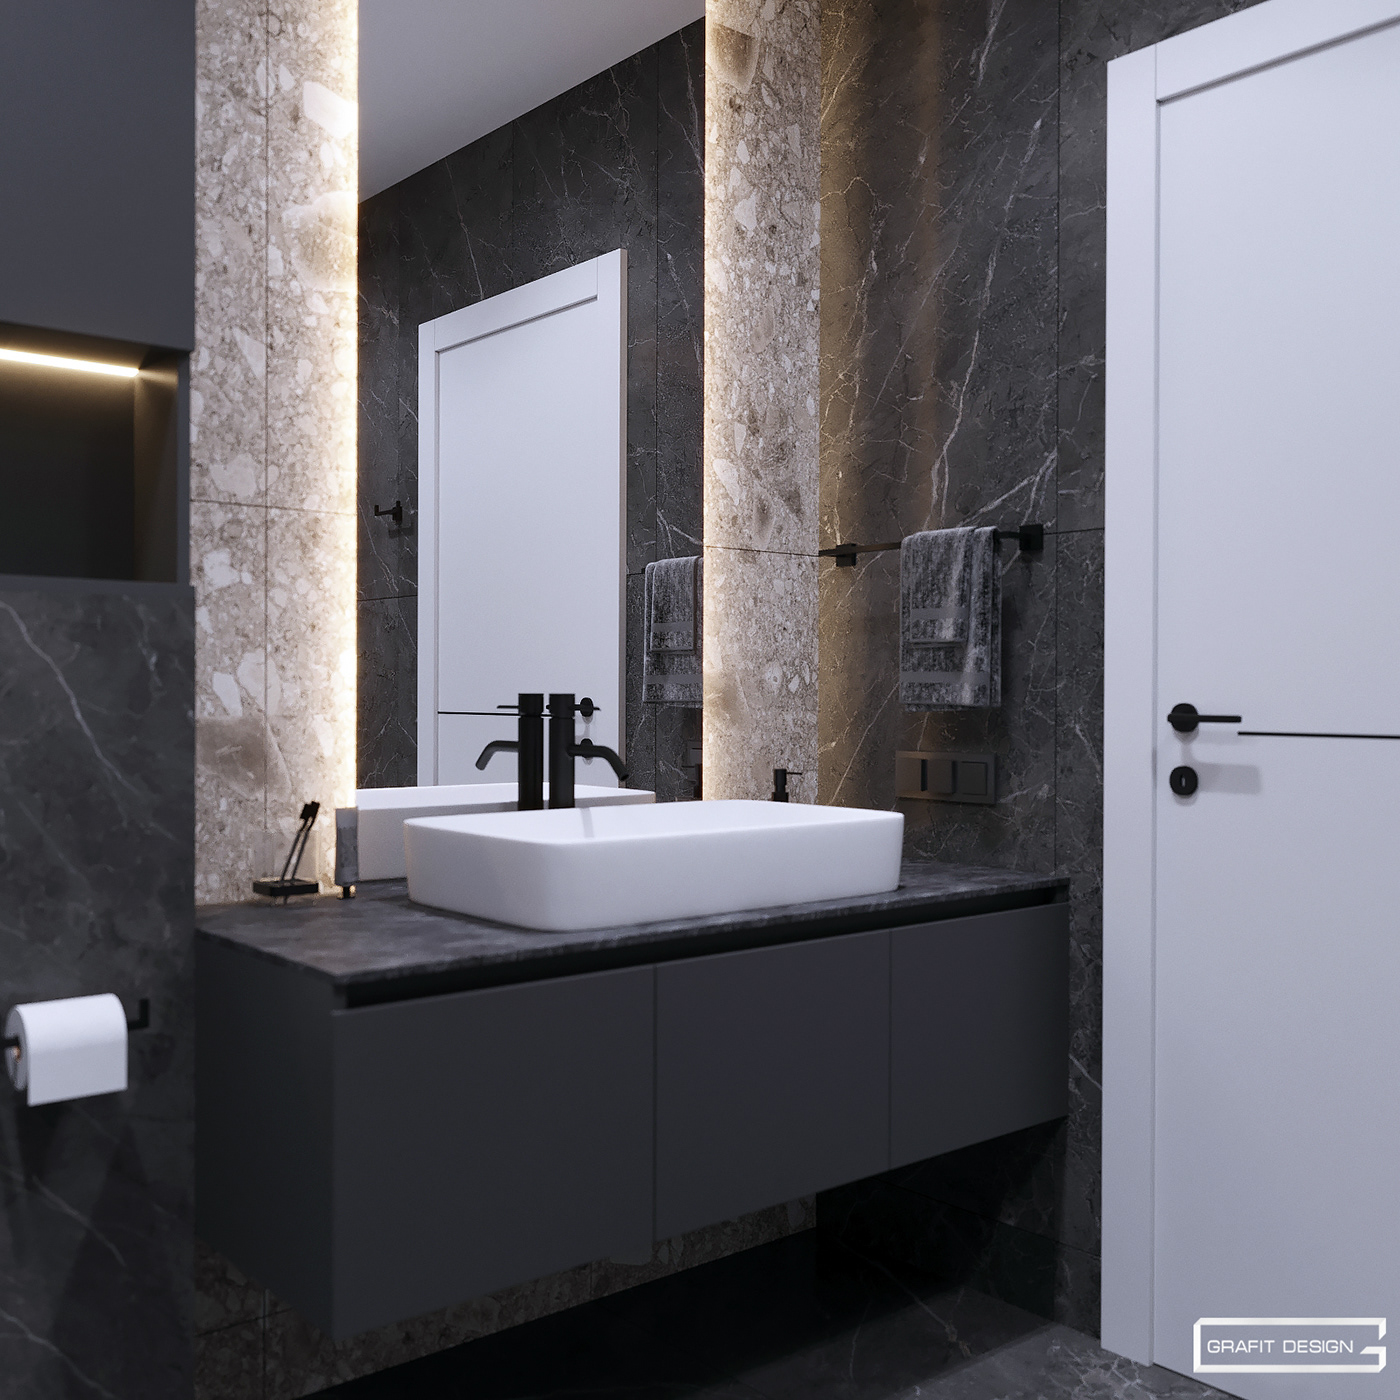 Bath in gray tones bathroom Interior modern